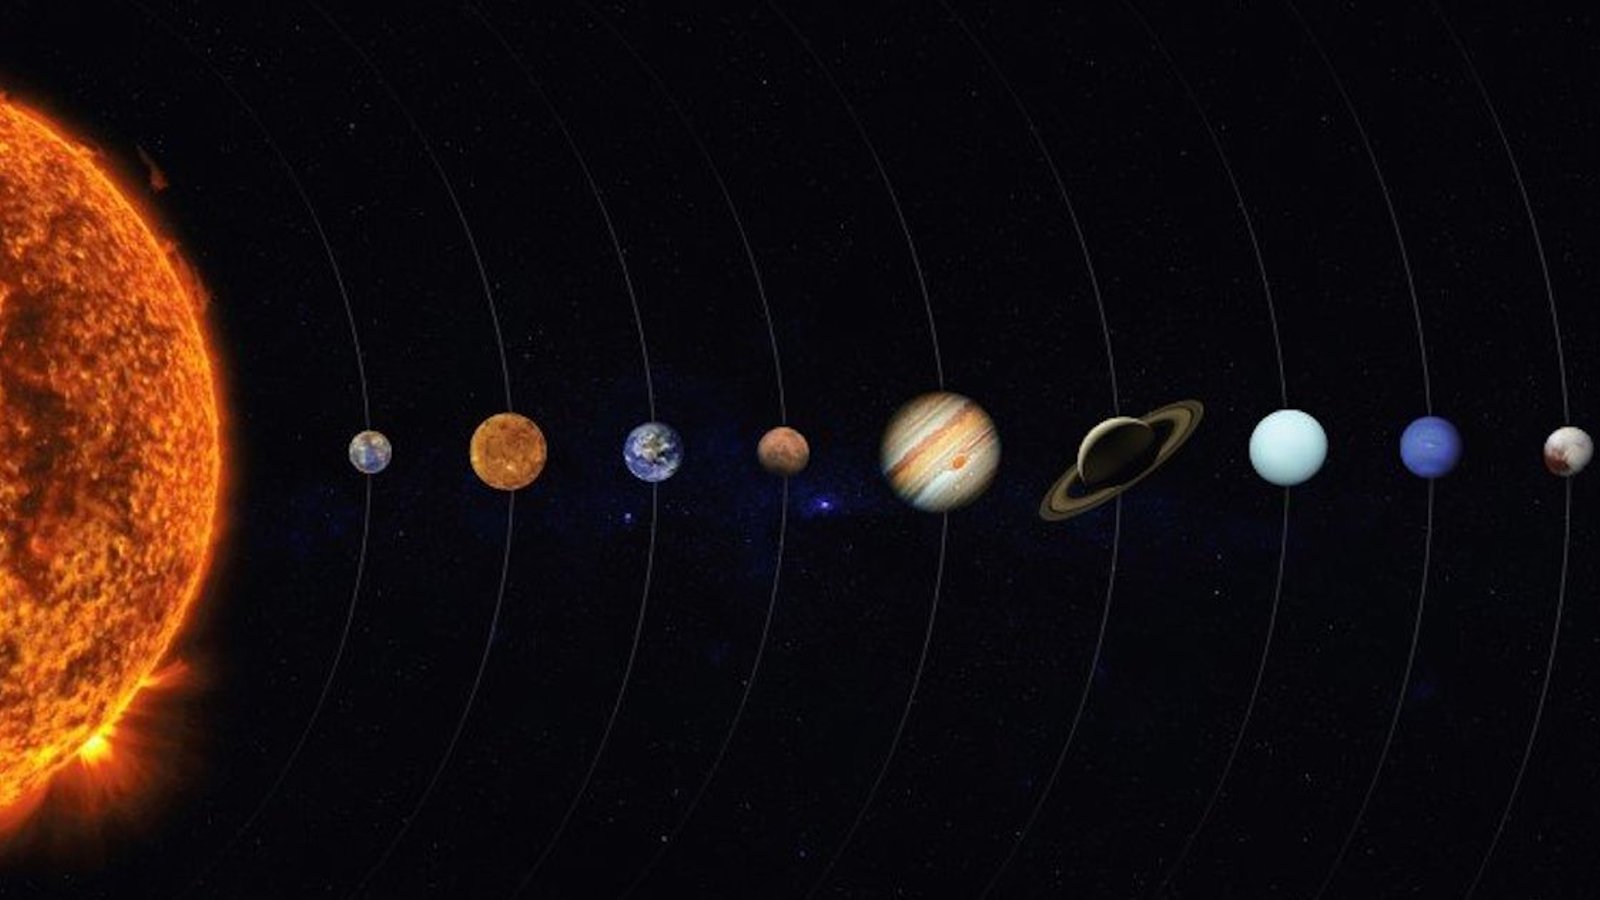 En juin, nous pouvons observer ces 5 planètes à l’oeil nu, dans un alignement exceptionnel